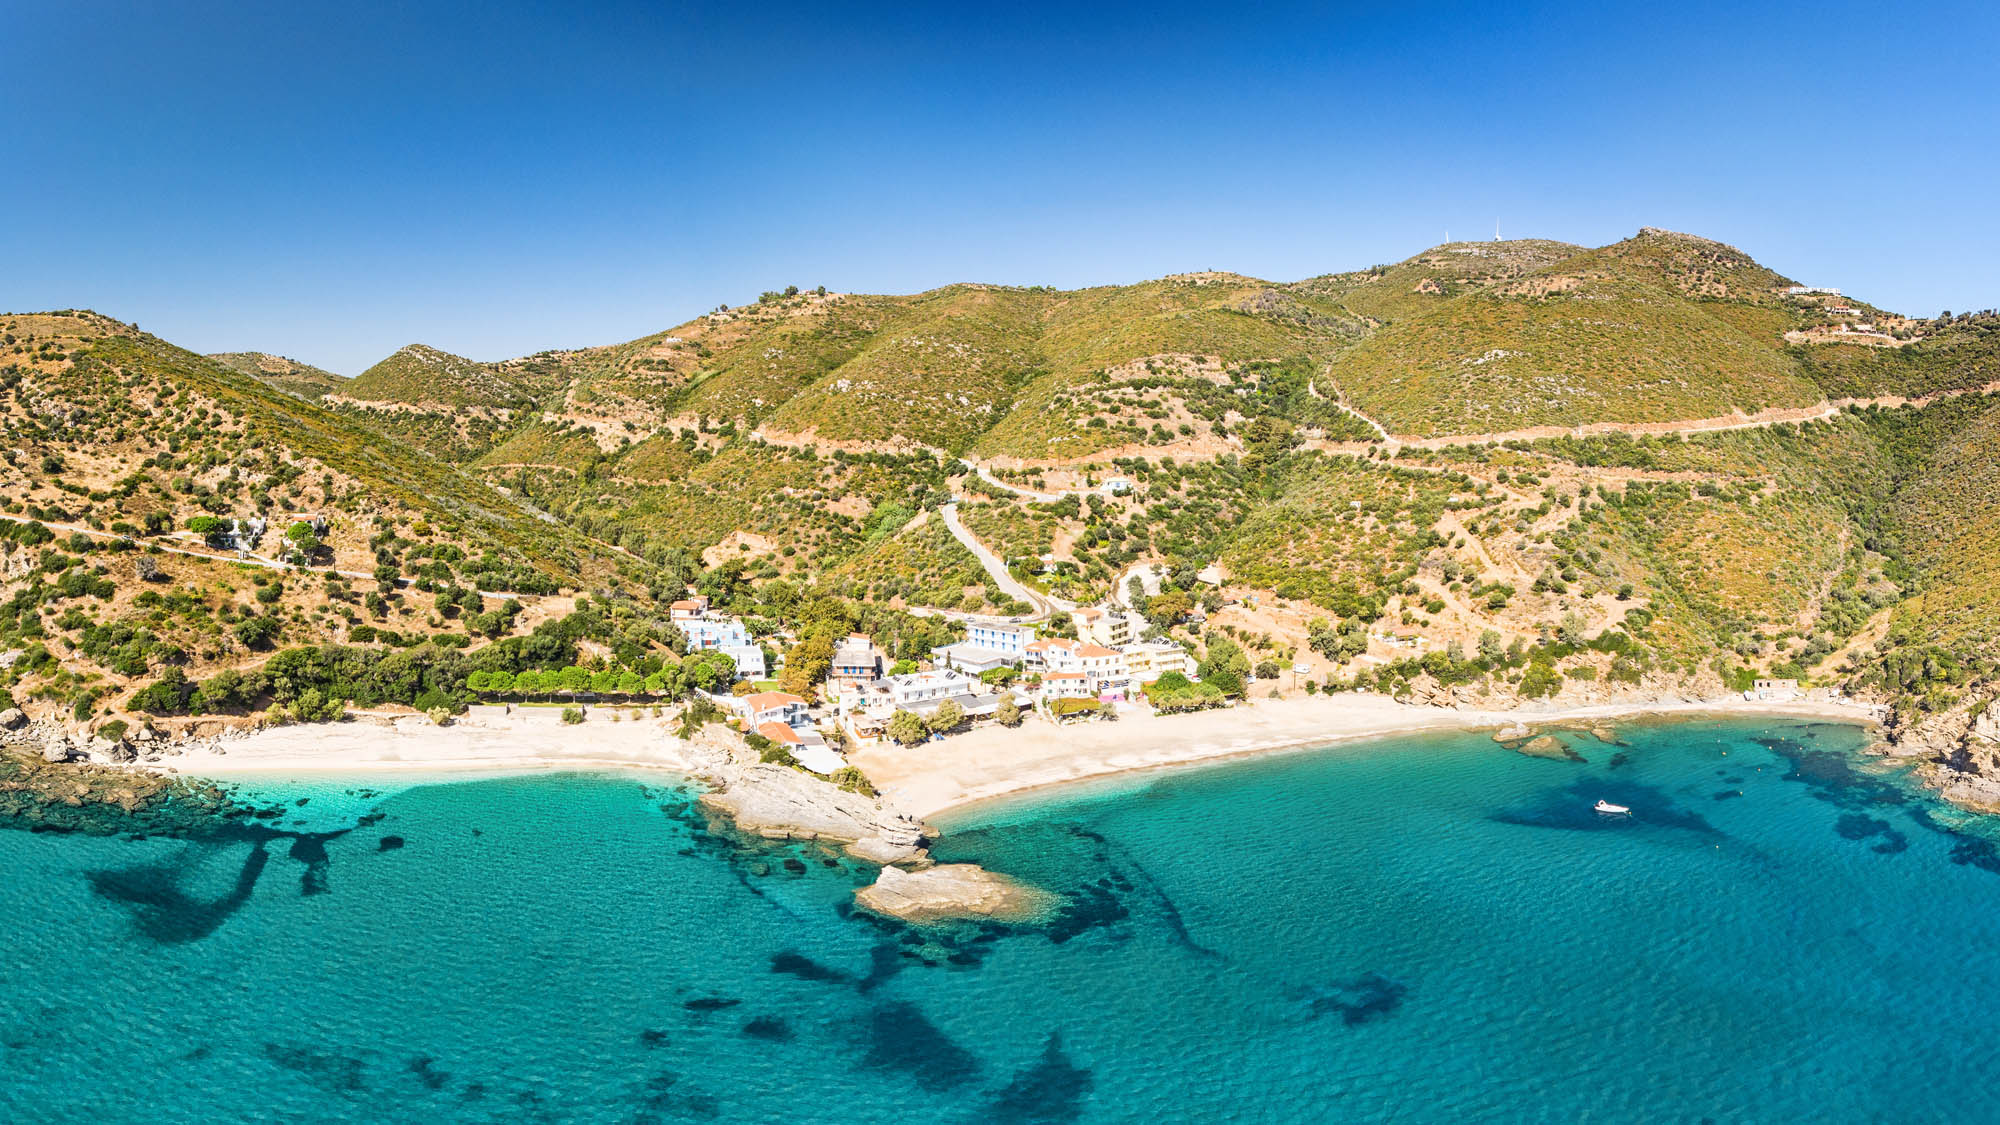 Widok na plażę Kalamos, góry i błękitne morze, wyspa Evia w Grecji